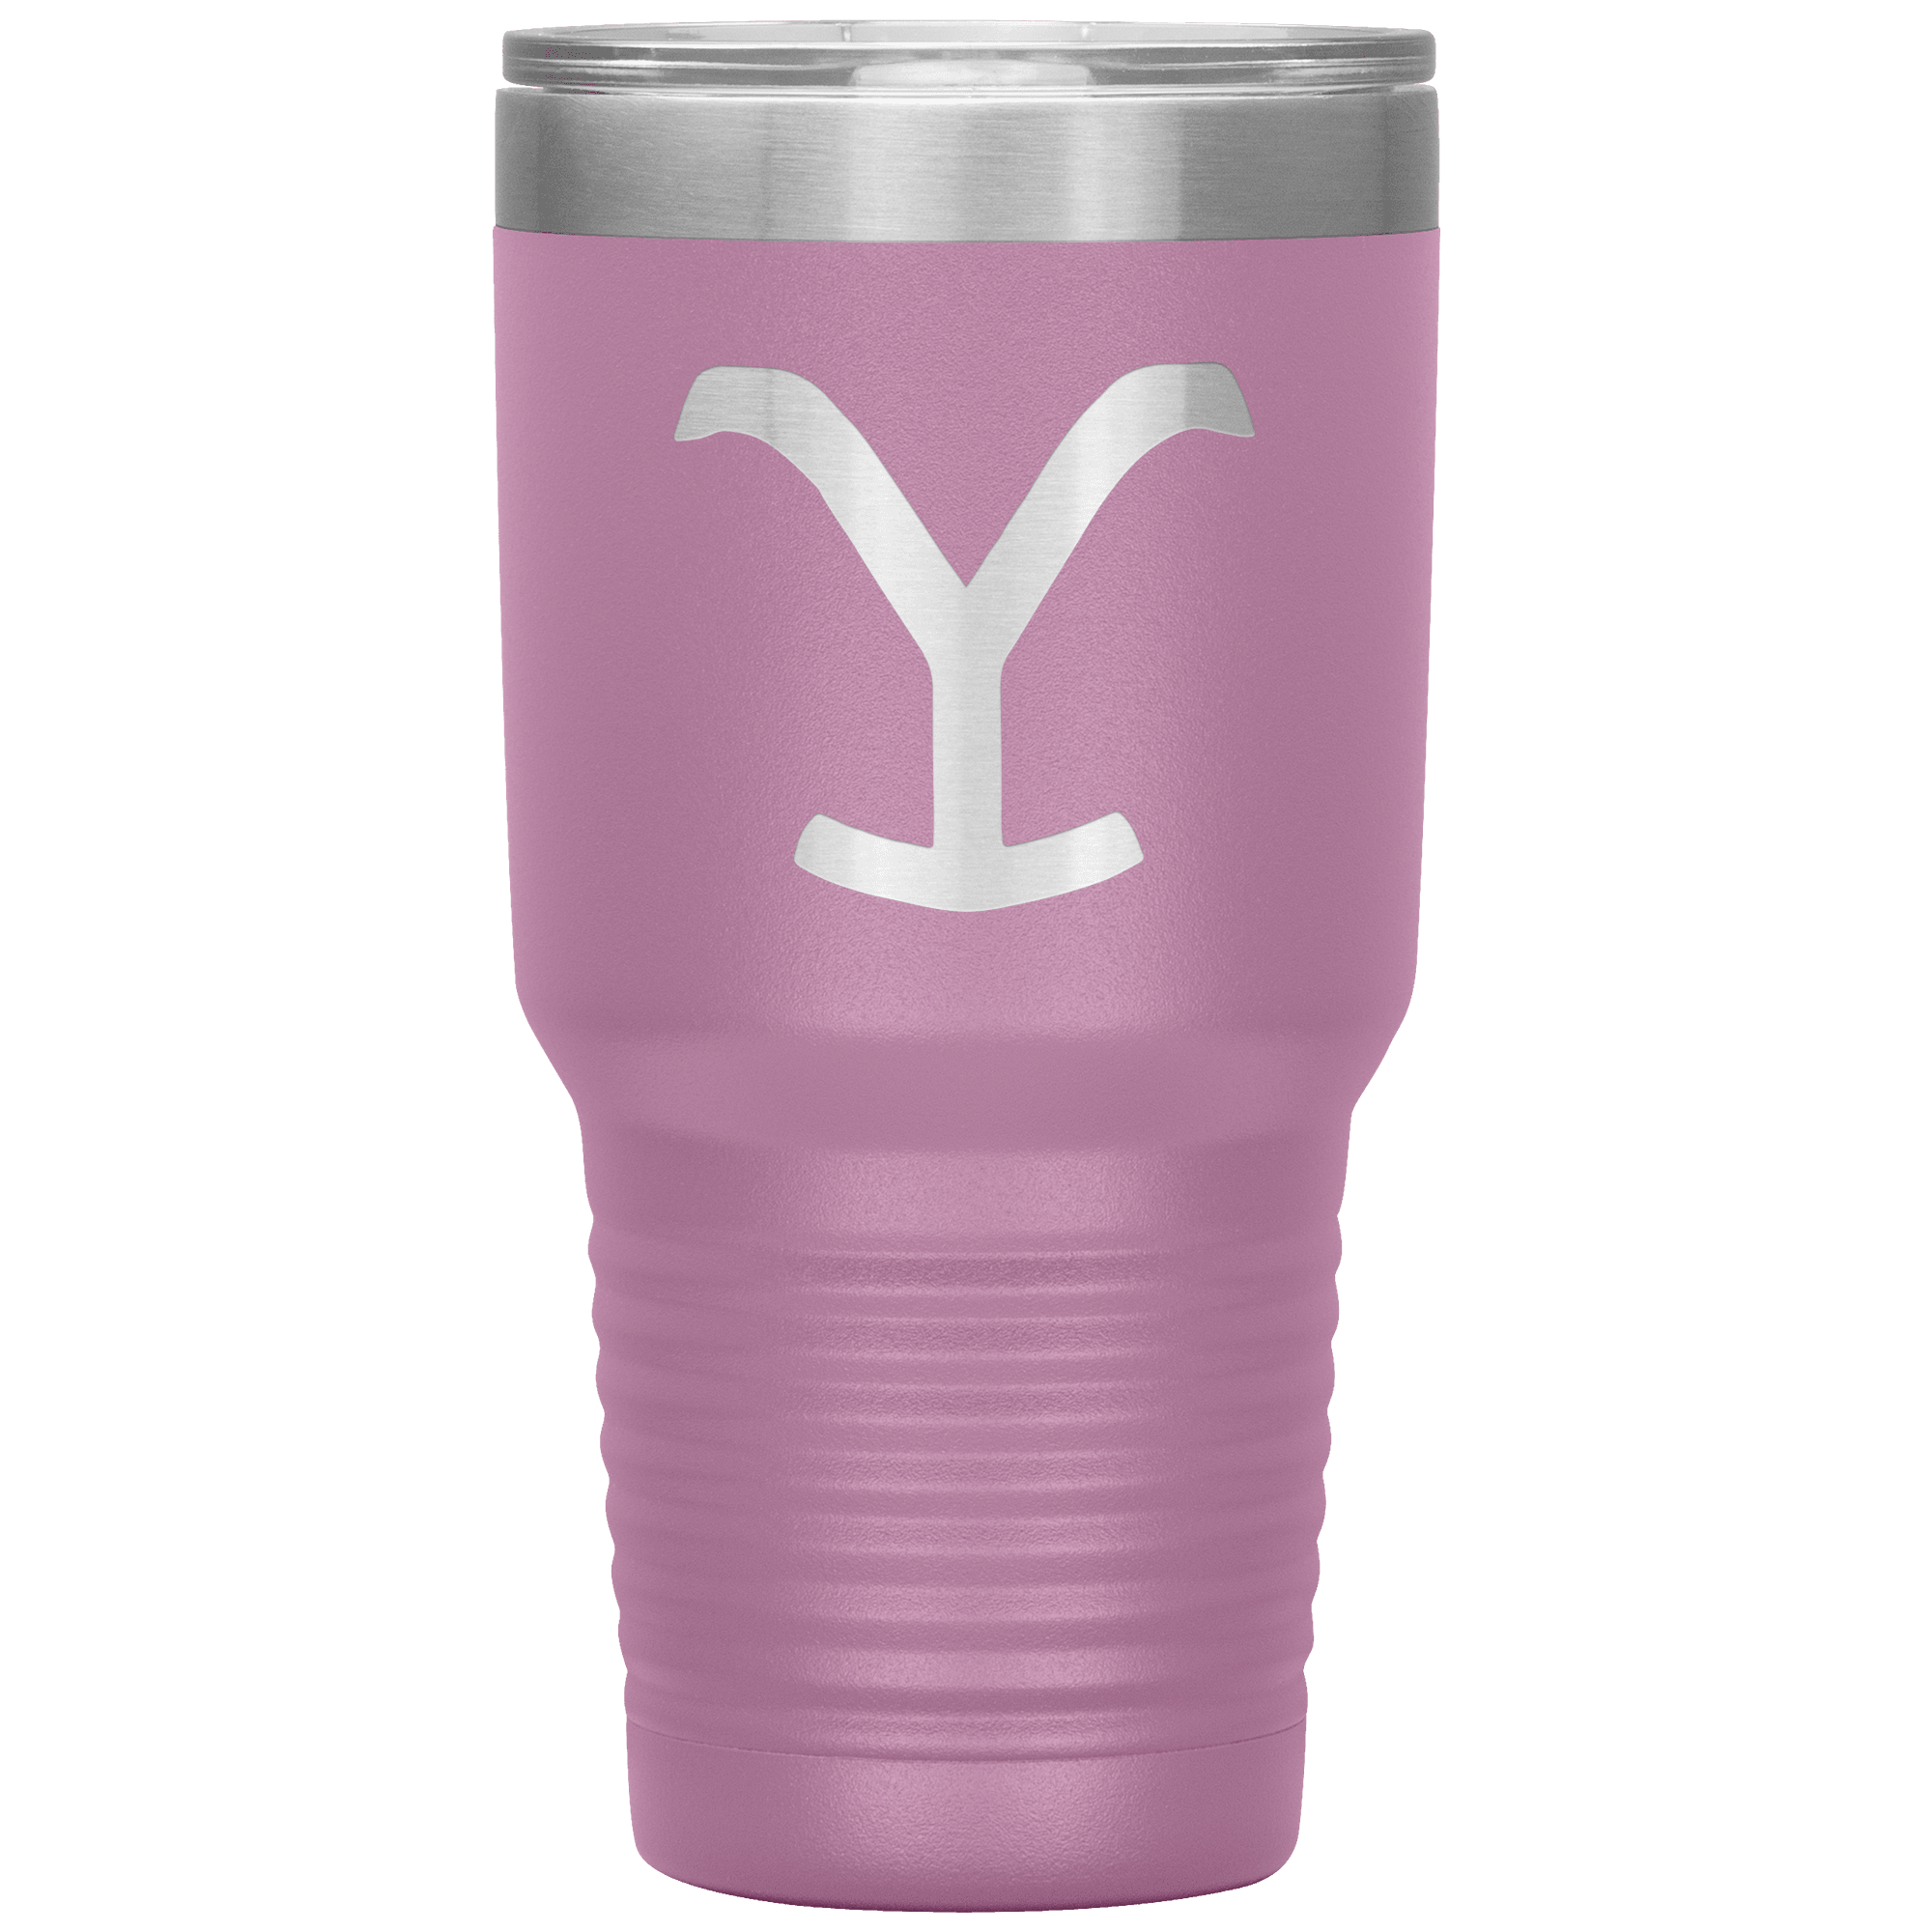 Yeti Rambler 30 oz Tumbler (Light Pink)